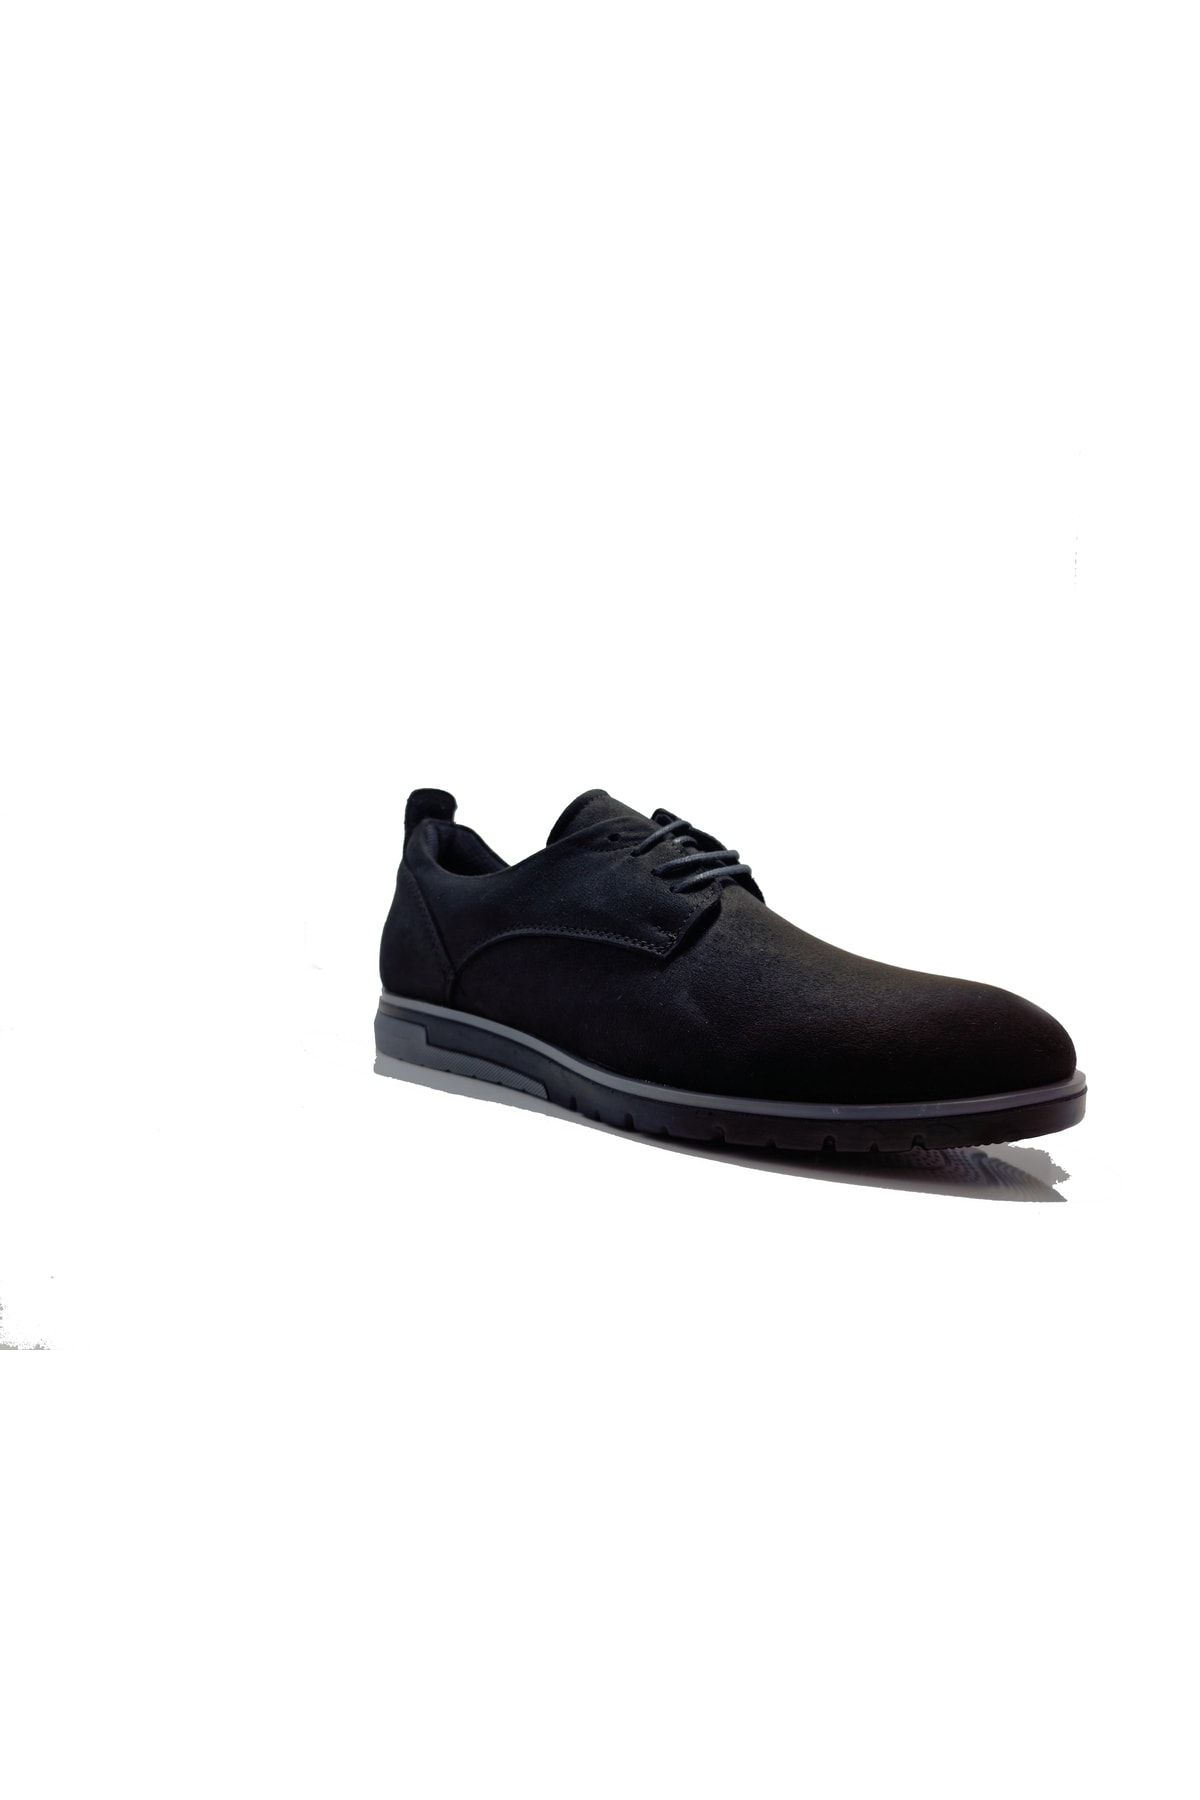 Conteyner 206 Siyah/nubuk Erkek Günlük Ayakkabı